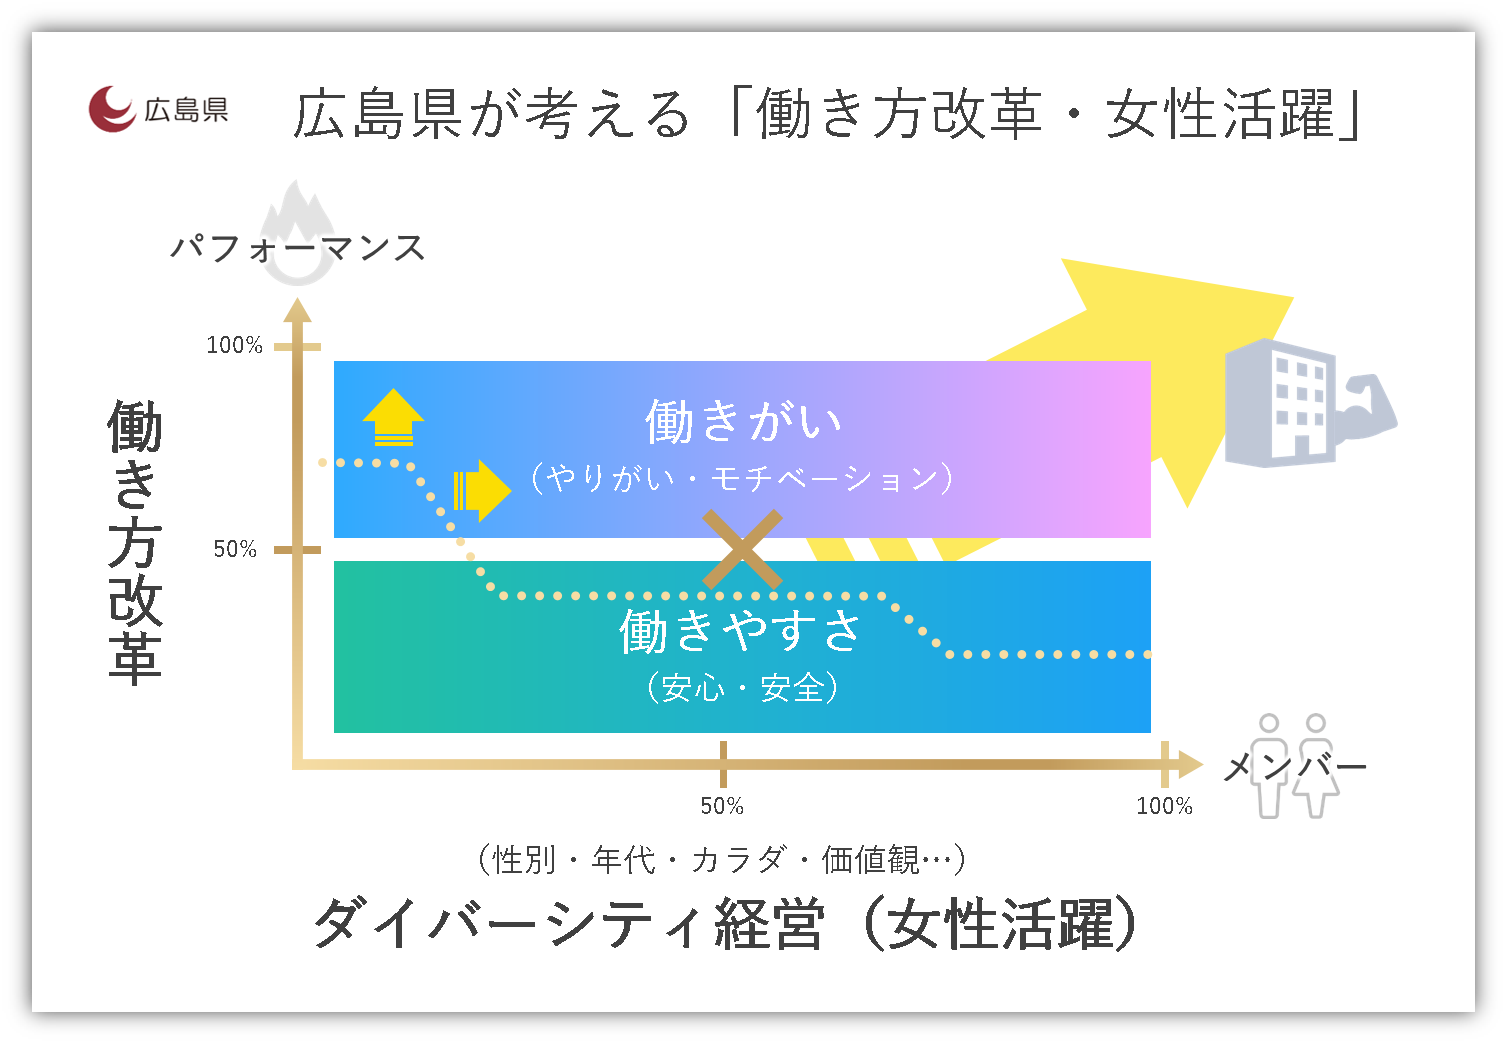 広島県が考える「働き方改革・女性活躍」のイメージ図